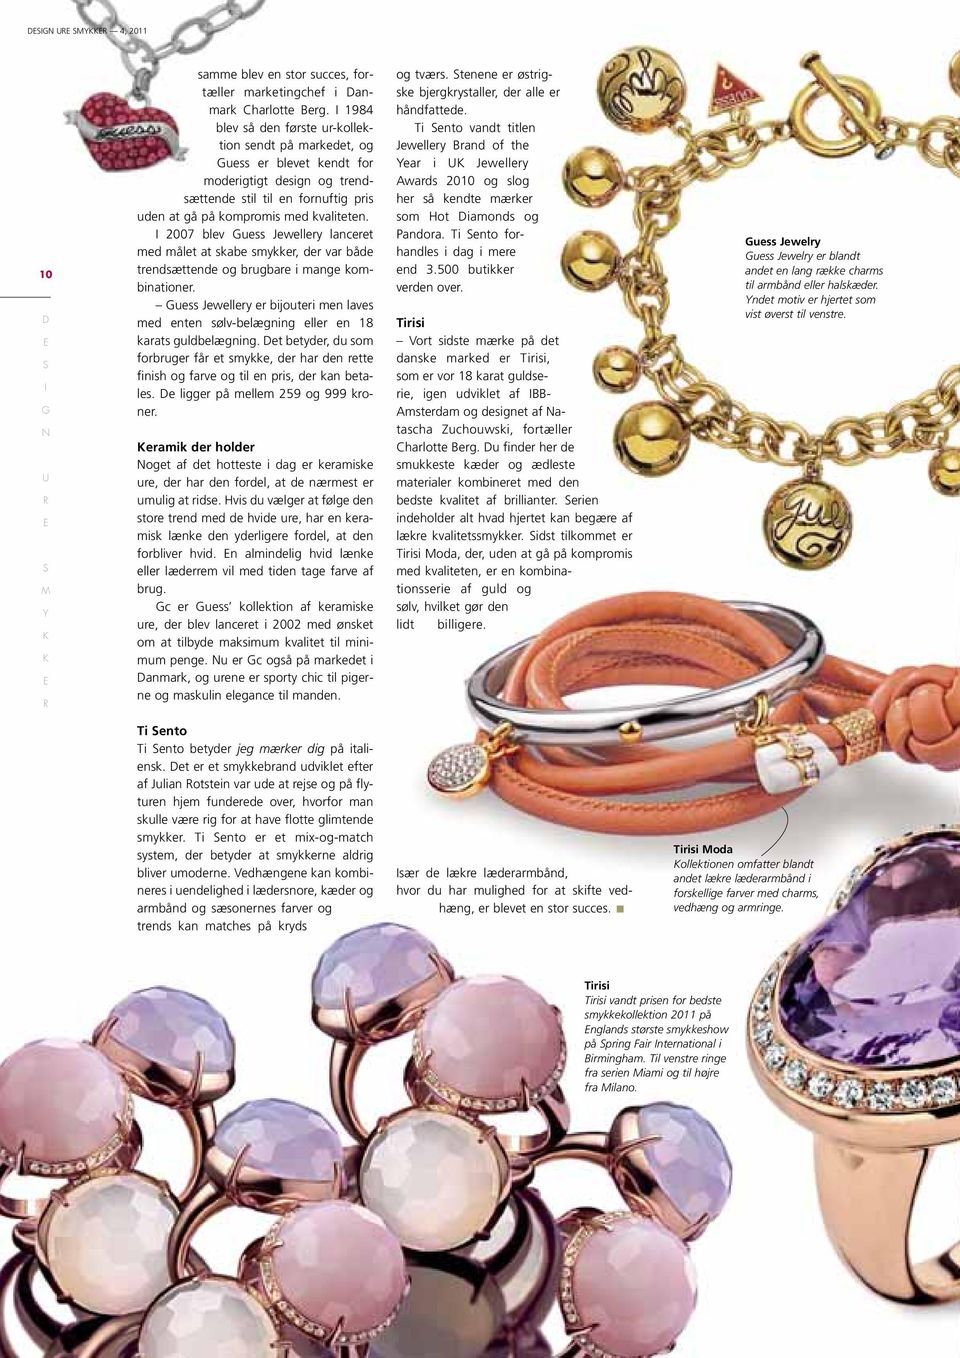 2007 blev uess Jewellery lanceret med målet at skabe smykker, der var både trendsættende og brugbare i mange kombinationer.